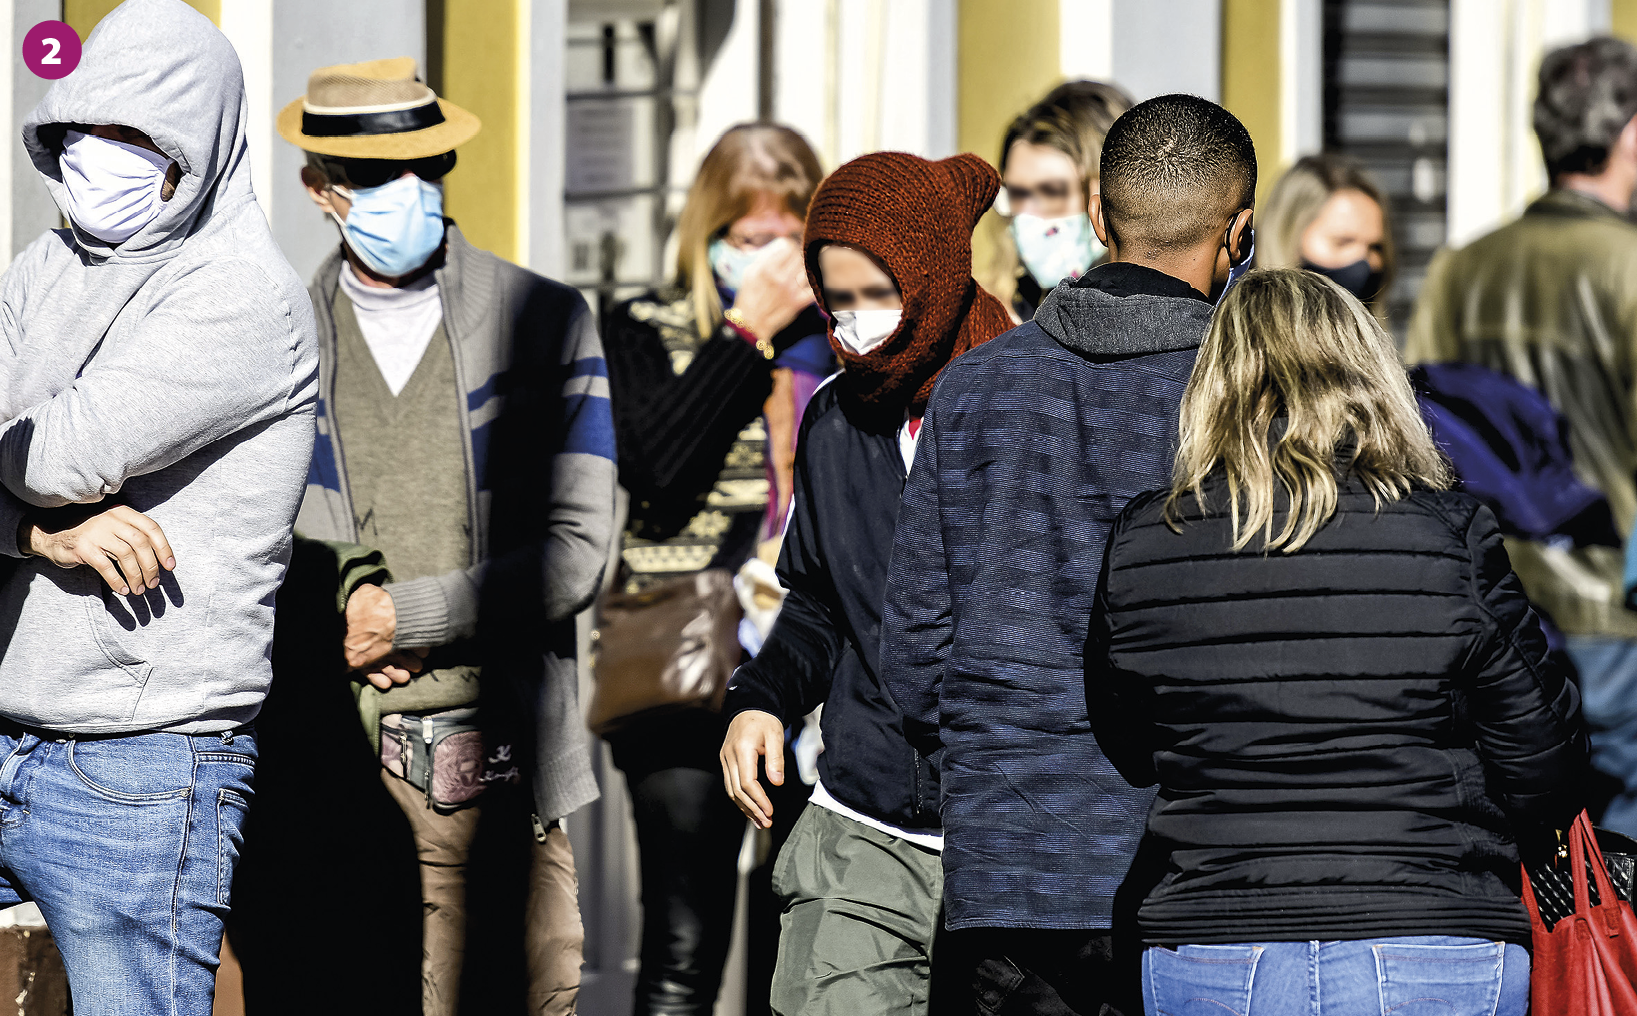 Fotografia 2. Pessoas agasalhadas com jaquetas grossas e toucas, utilizando máscaras de proteção no nariz e boca, trafegam por uma via em um local aberto. Há a presença da luz do sol.